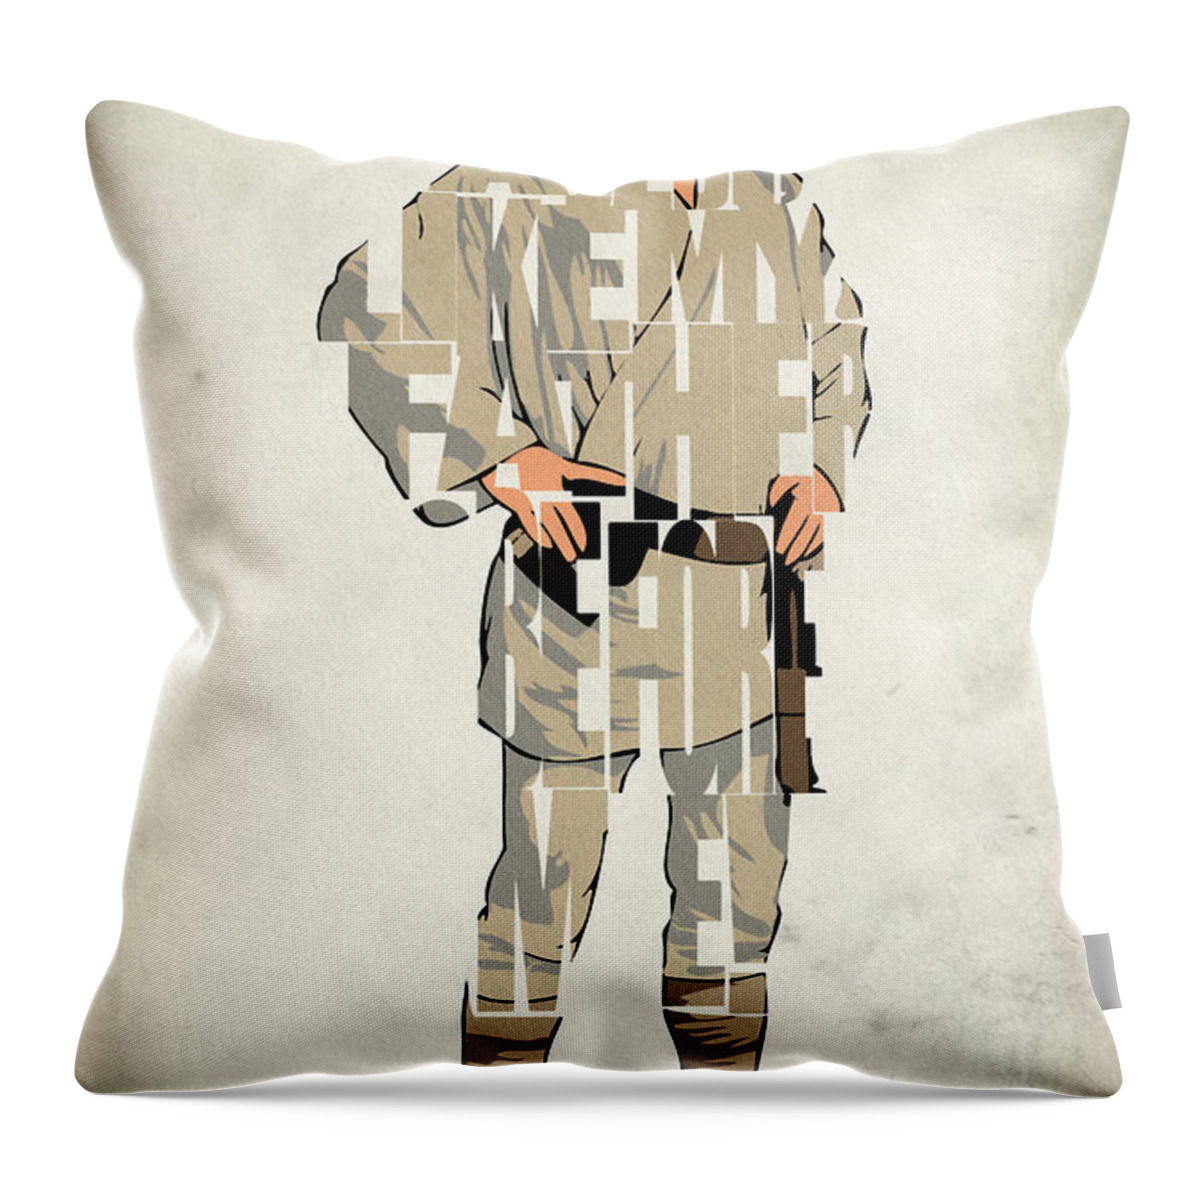 Luke Skywalker Throw Pillow featuring the digital art Luke Skywalker - Mark Hamill by Inspirowl Design